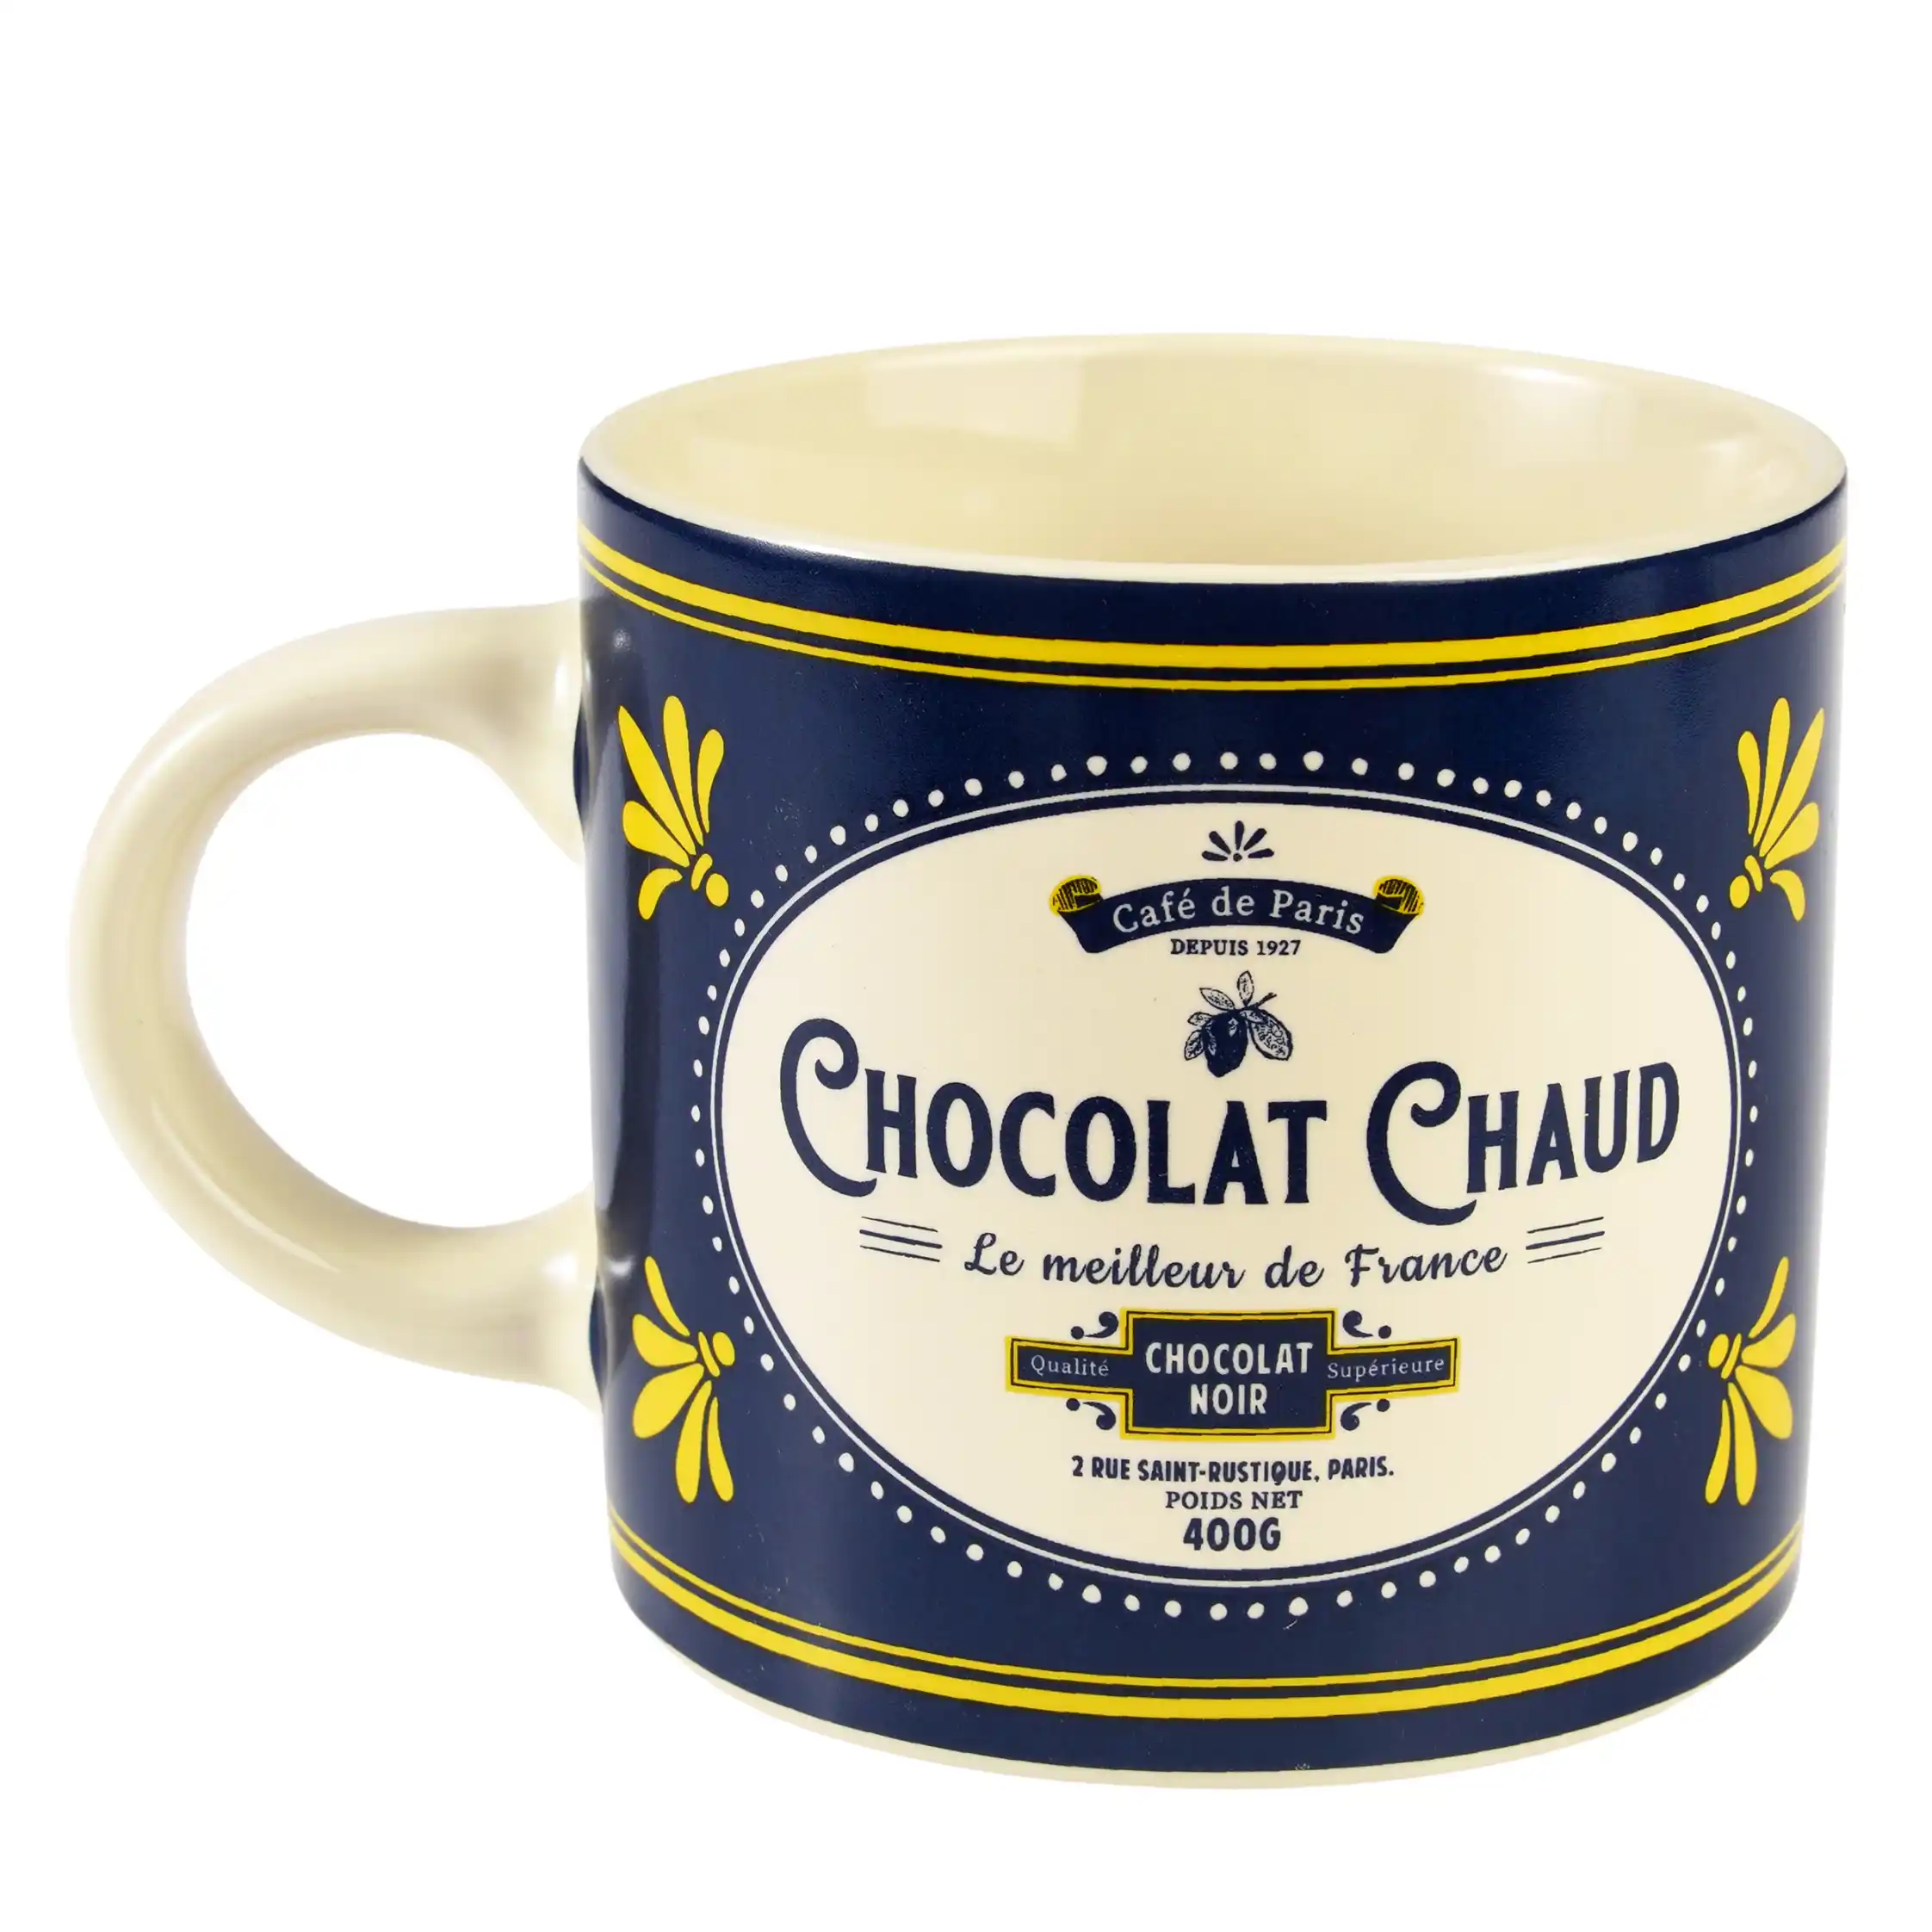 ceramic mug - café de paris "chocolat chaud"